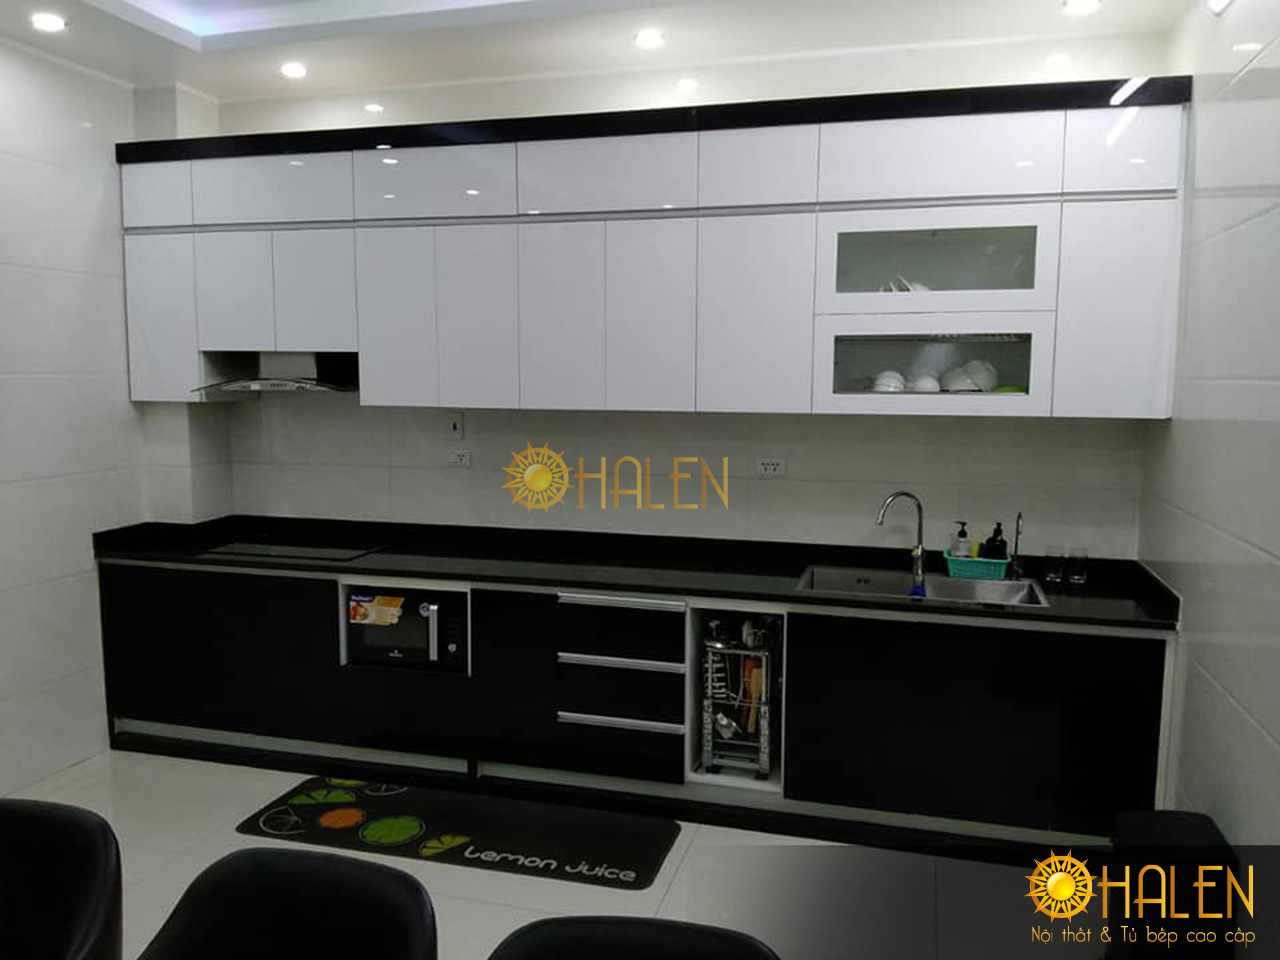 OHALEN chuyên thi công các mẫu tủ bếp phù hợp với không gian và diện tích phòng bếp